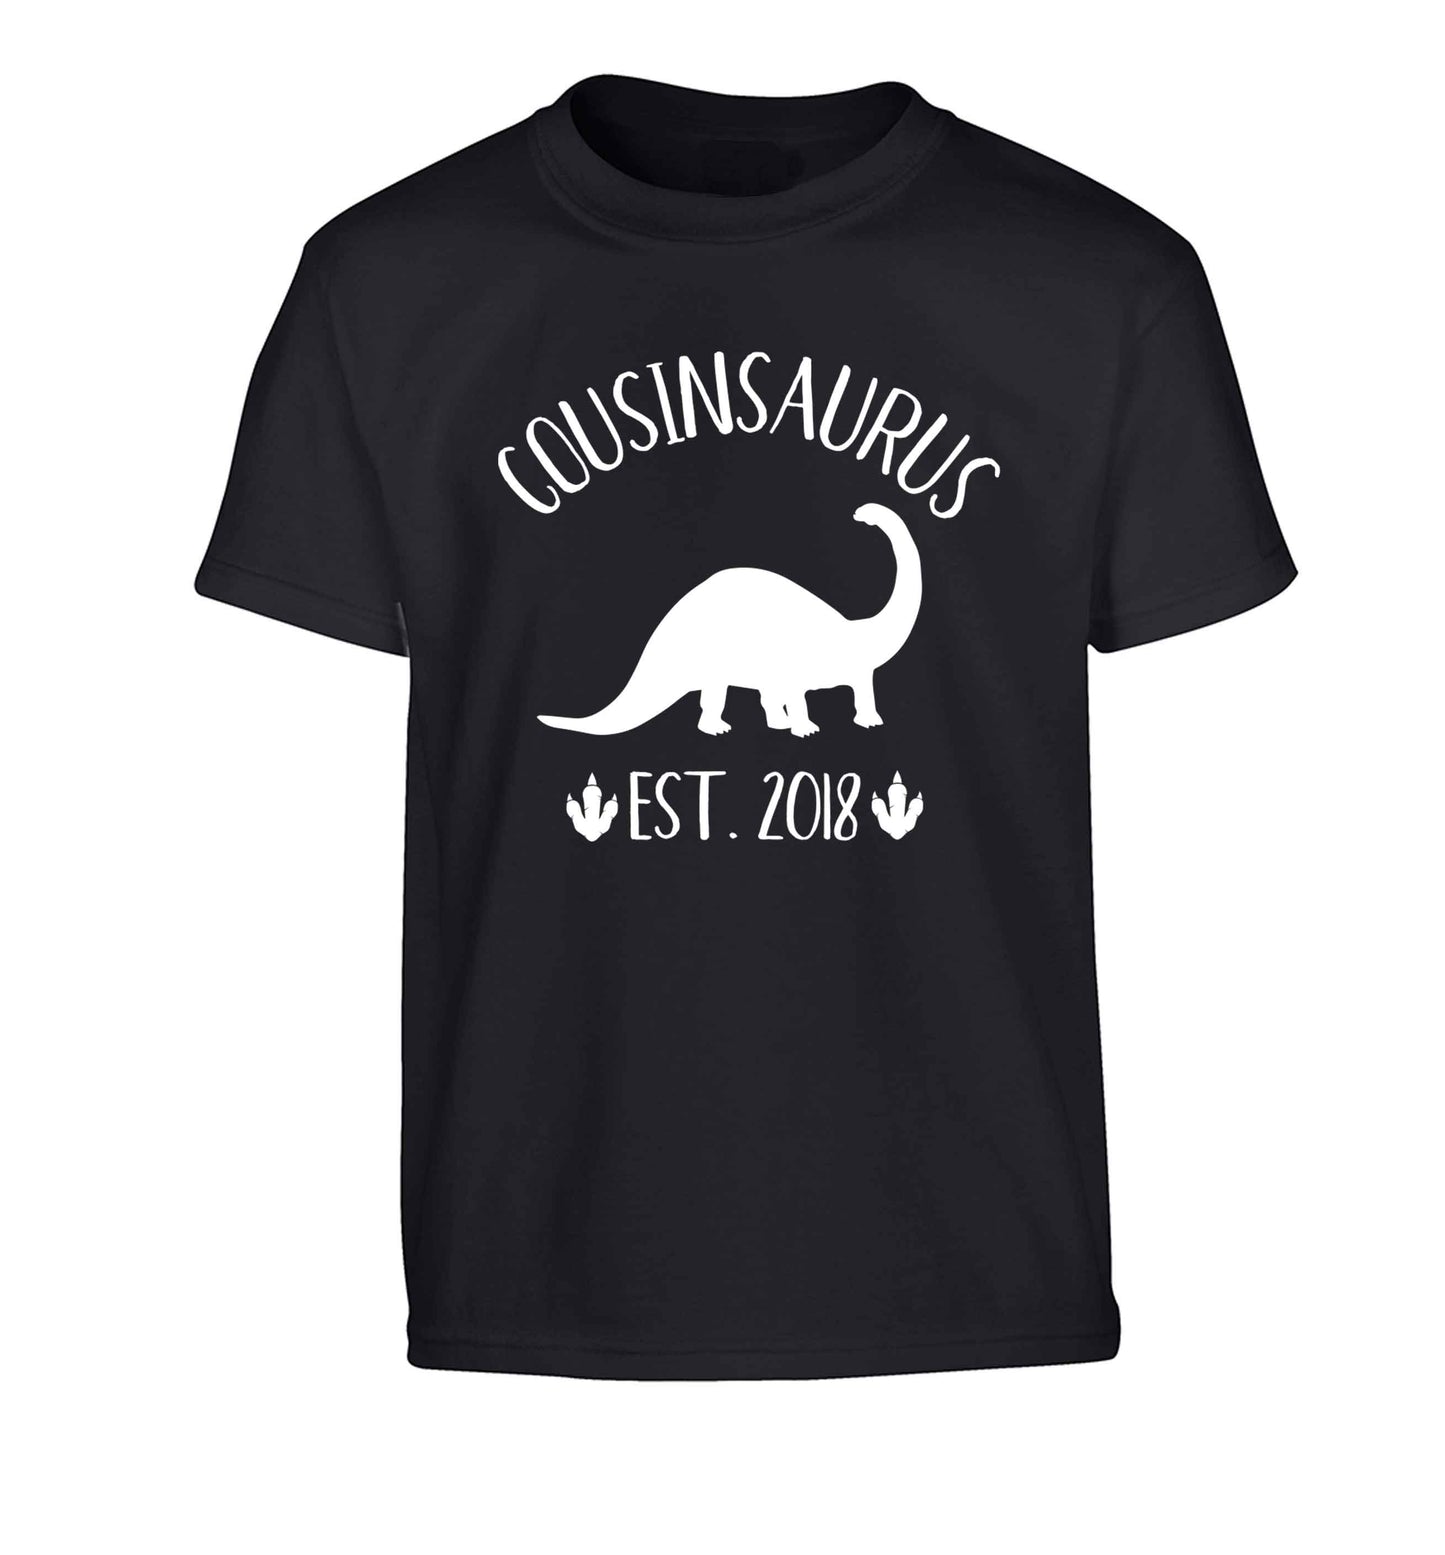 Personalised cousinsaurus since (custom date) Children's black Tshirt 12-13 Years